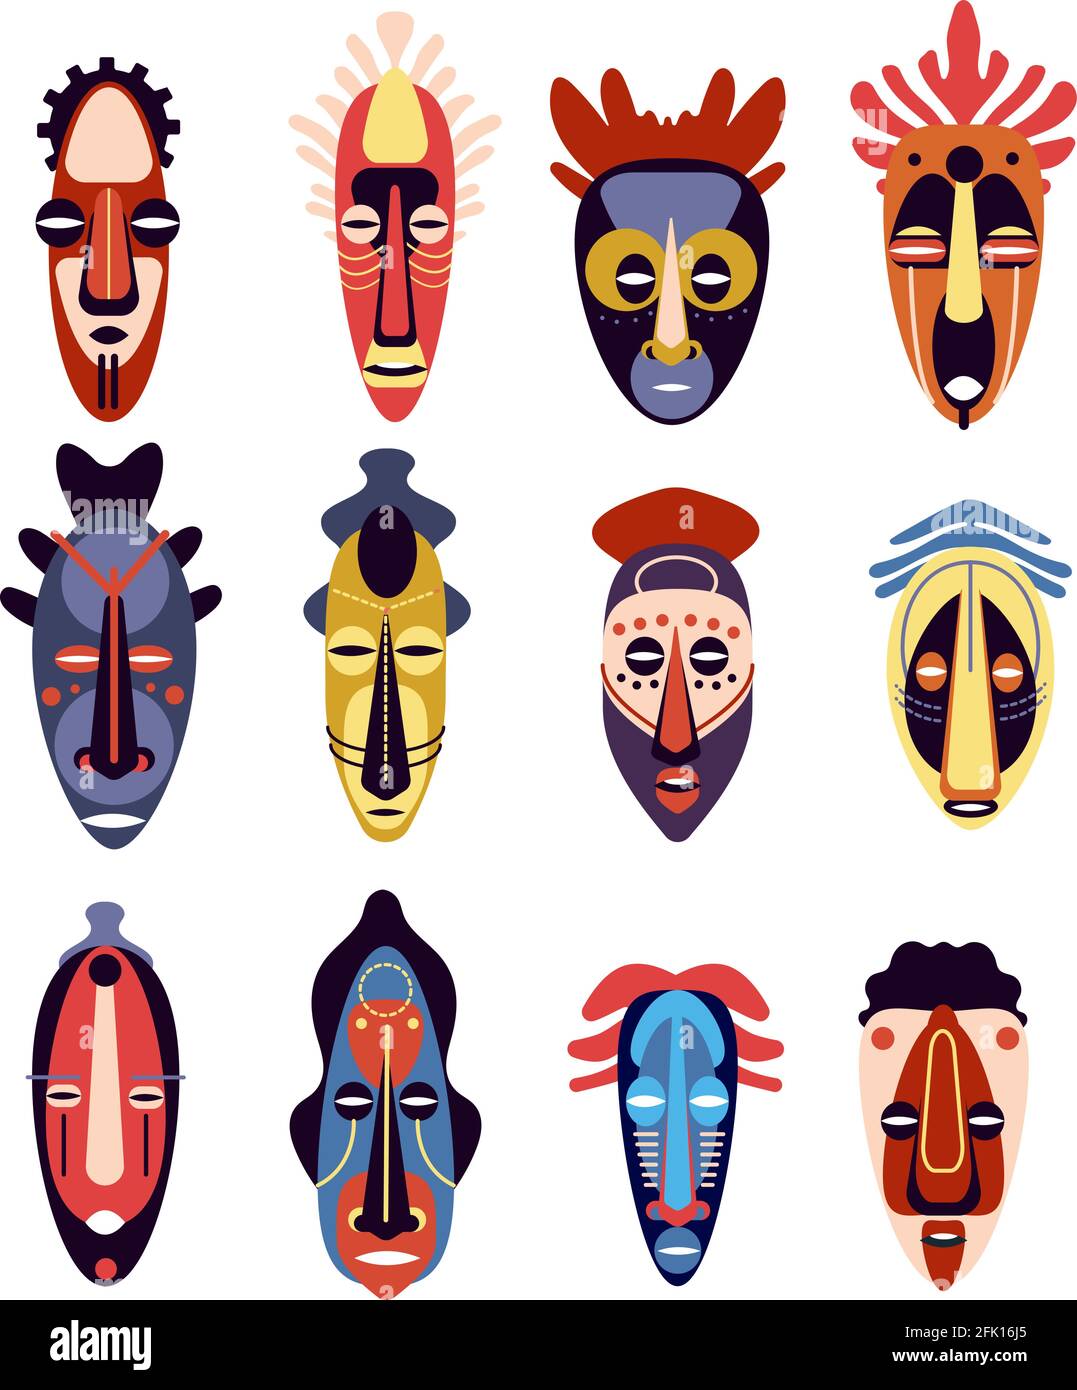 Masque africain. Traditionnel rituel ou cérémonial ethnique hawaïen, aztèque masques de visage humain, museau totem aborigène, ensemble coloré de vecteur plat Illustration de Vecteur